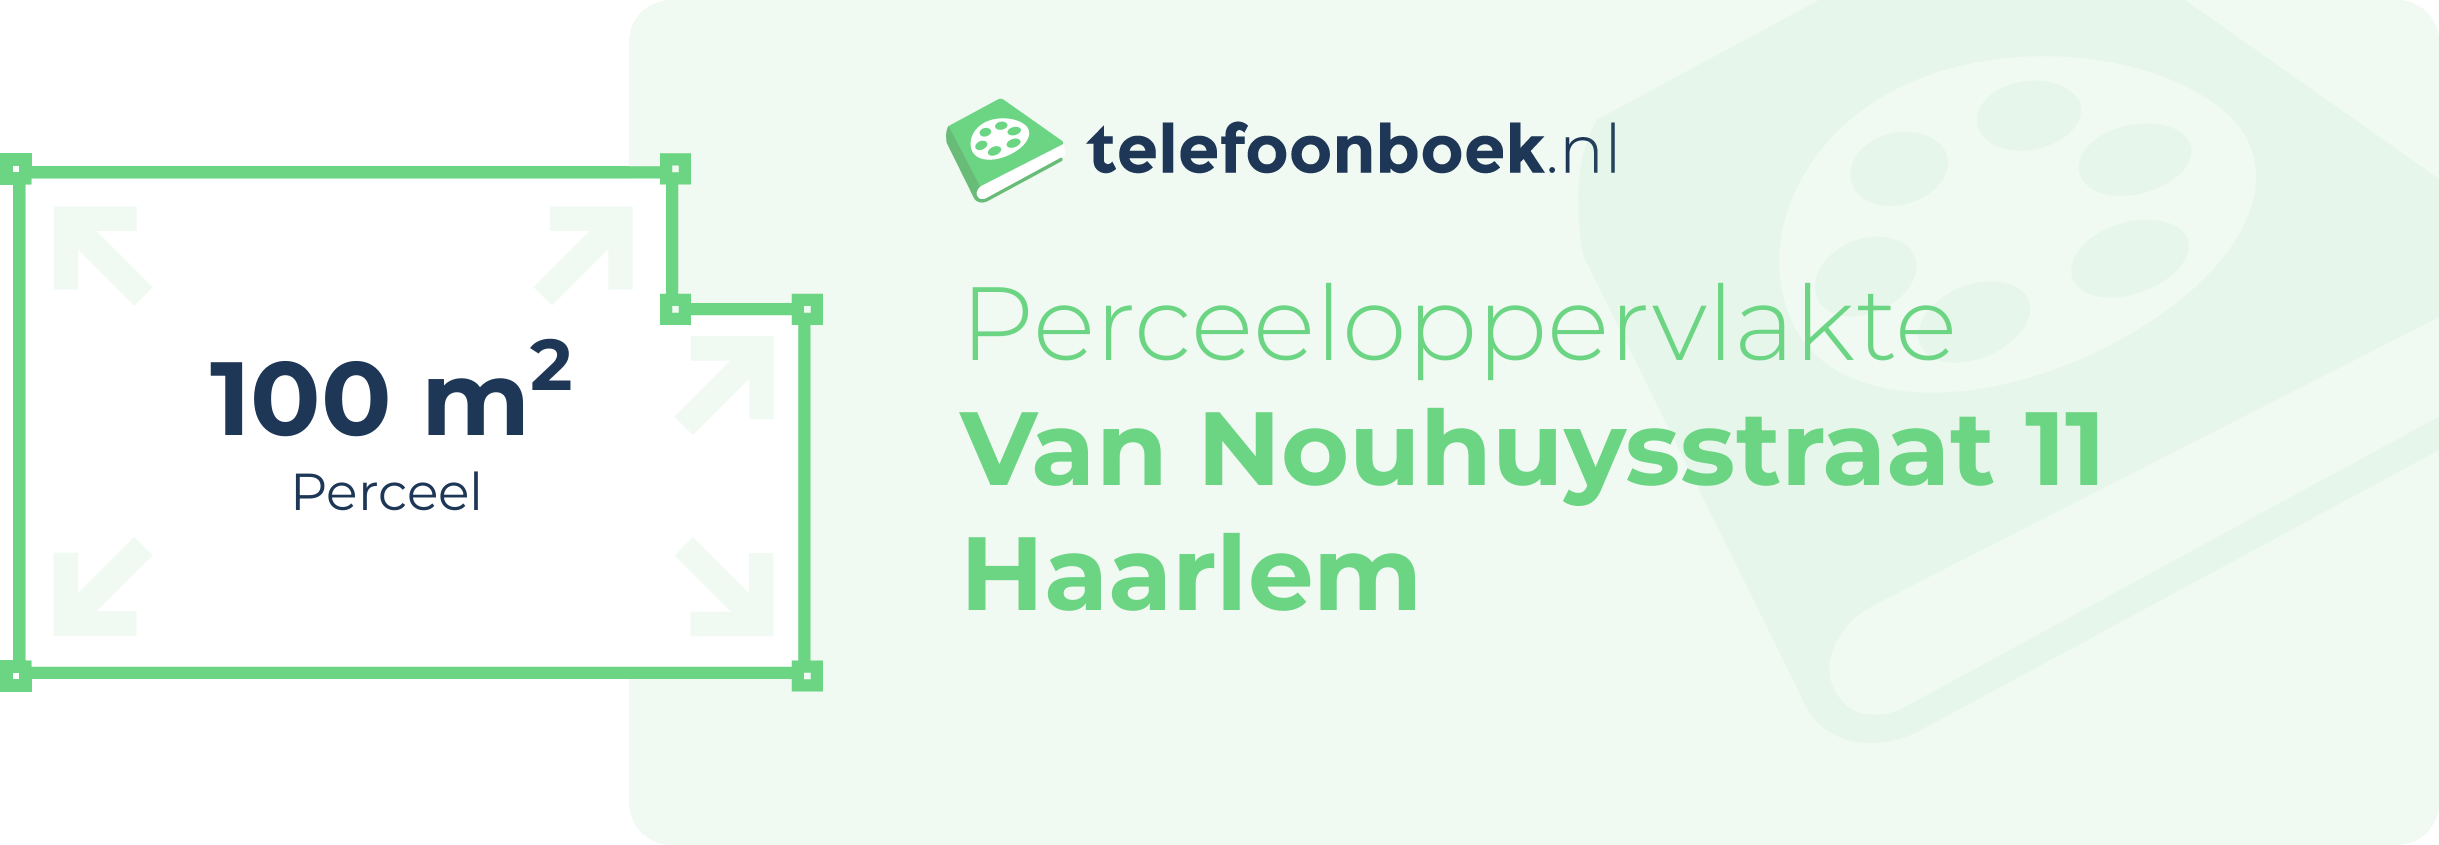 Perceeloppervlakte Van Nouhuysstraat 11 Haarlem